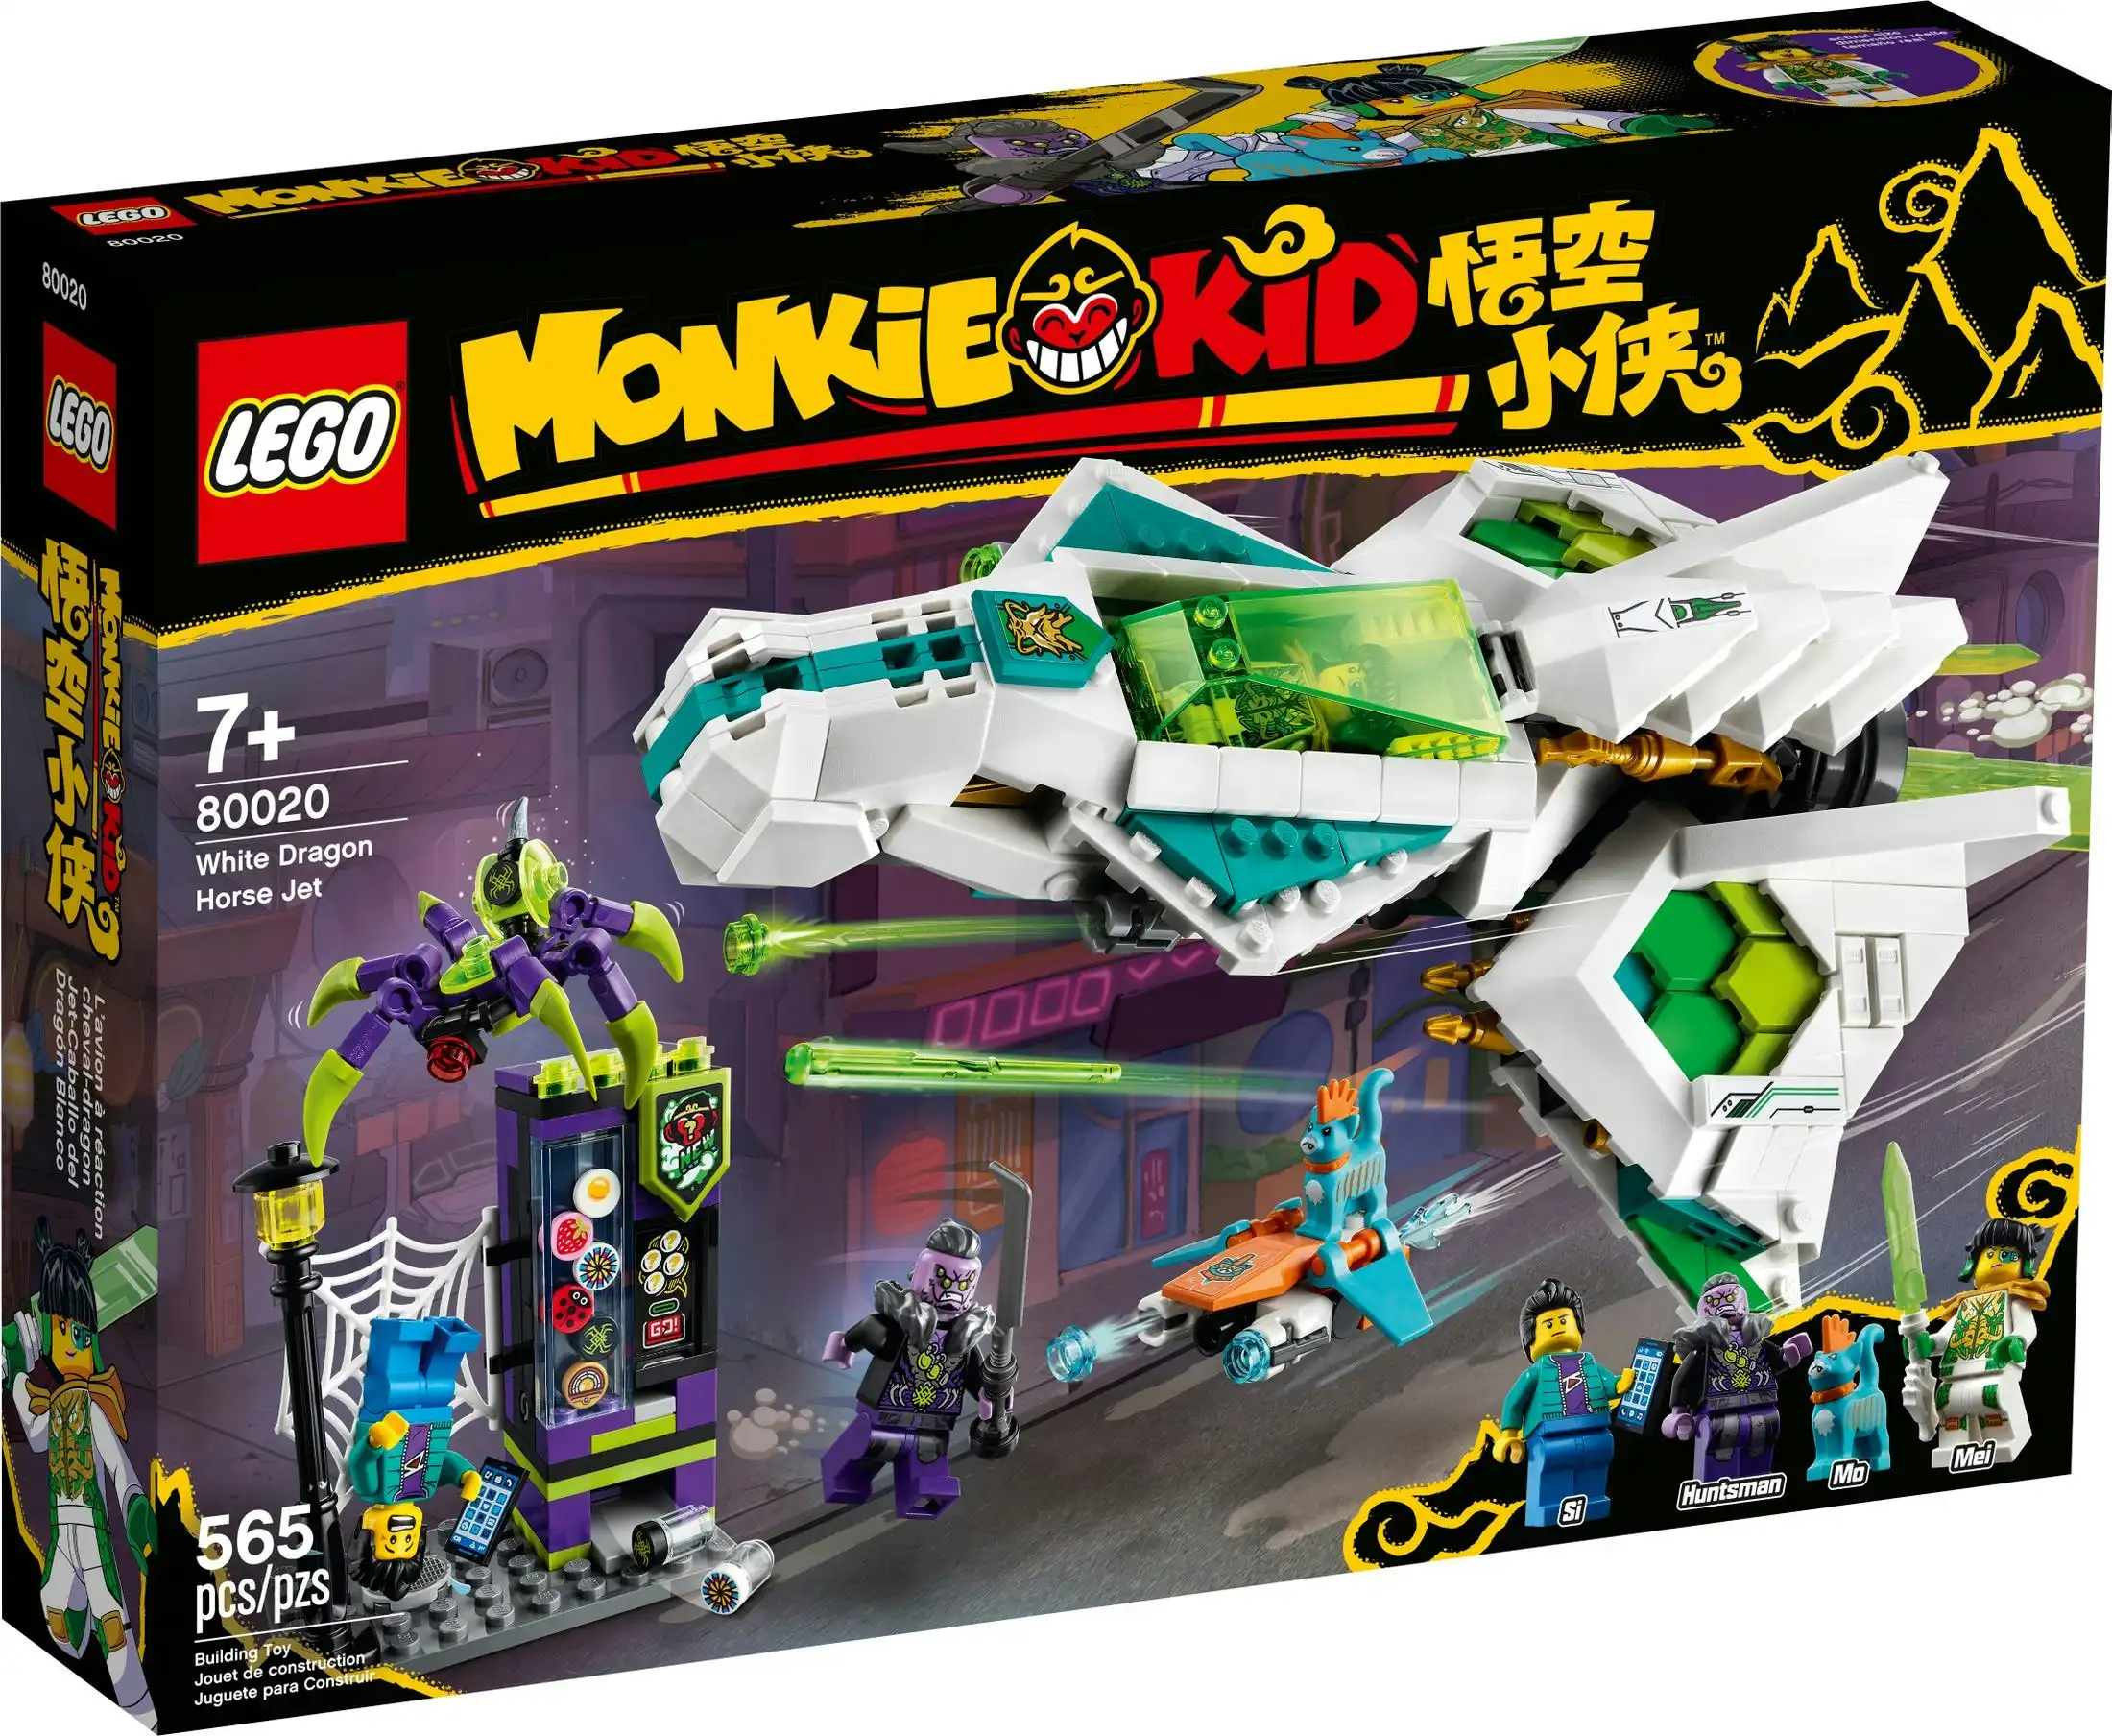 LEGO 80020 White Dragon Horse Jet - Monkie Kid